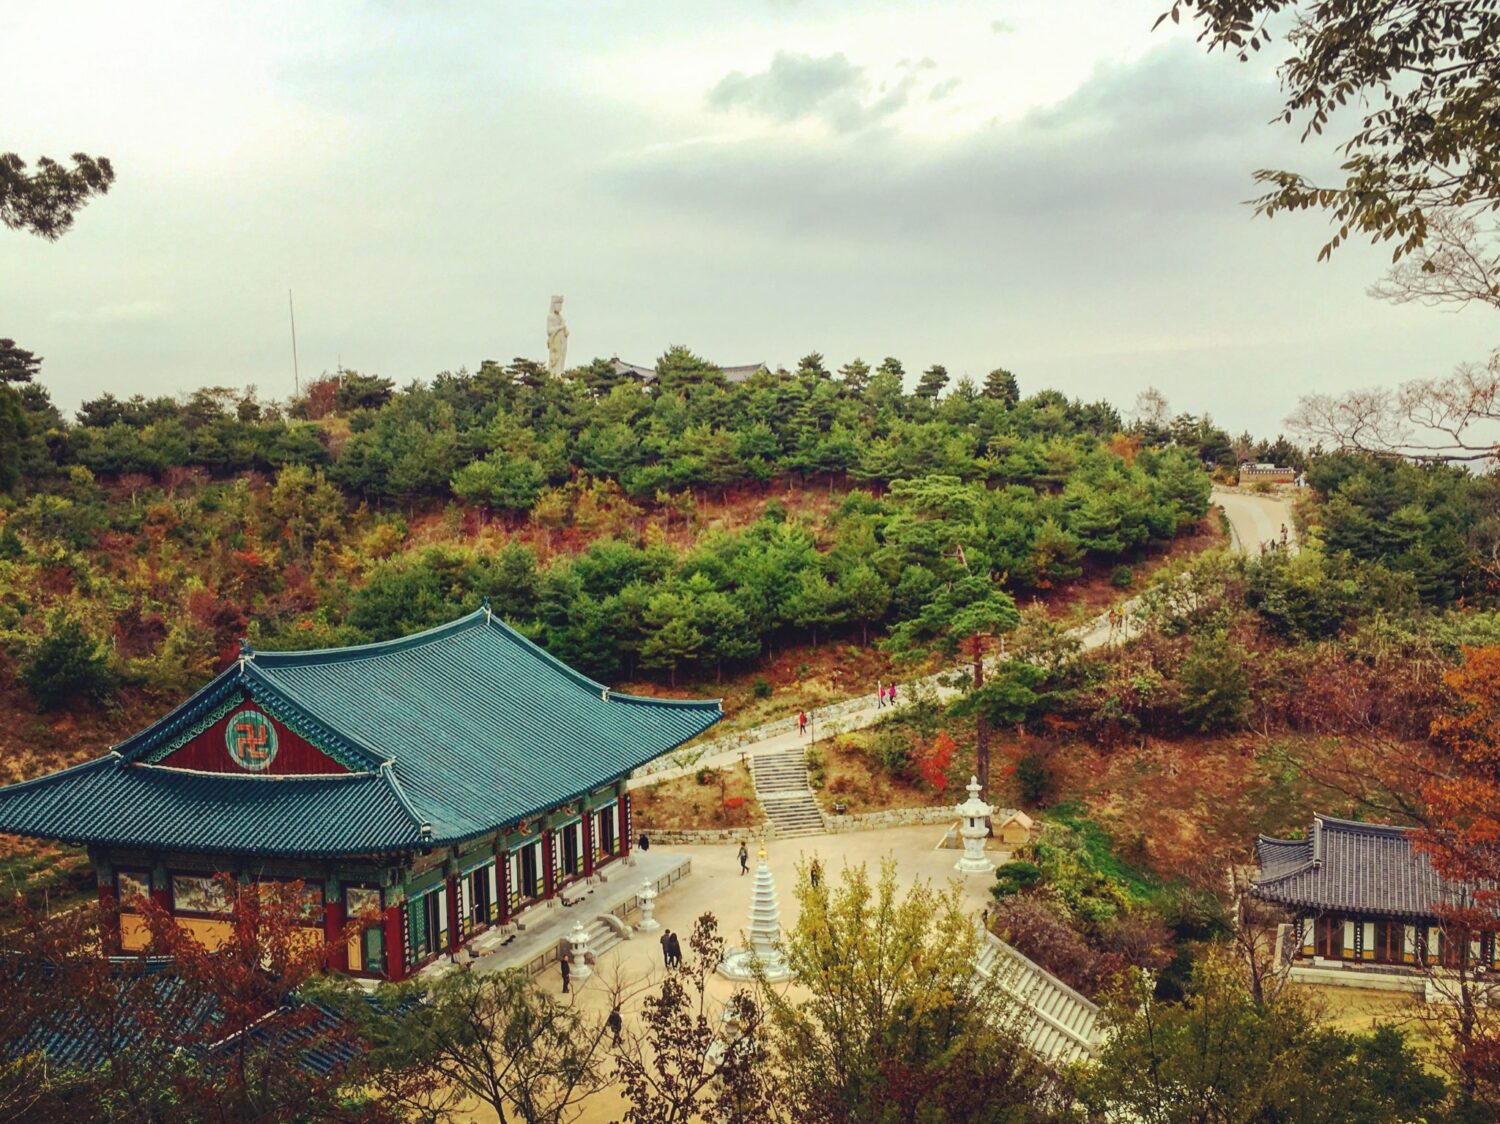 korea in october | Naksansa temple in autumn